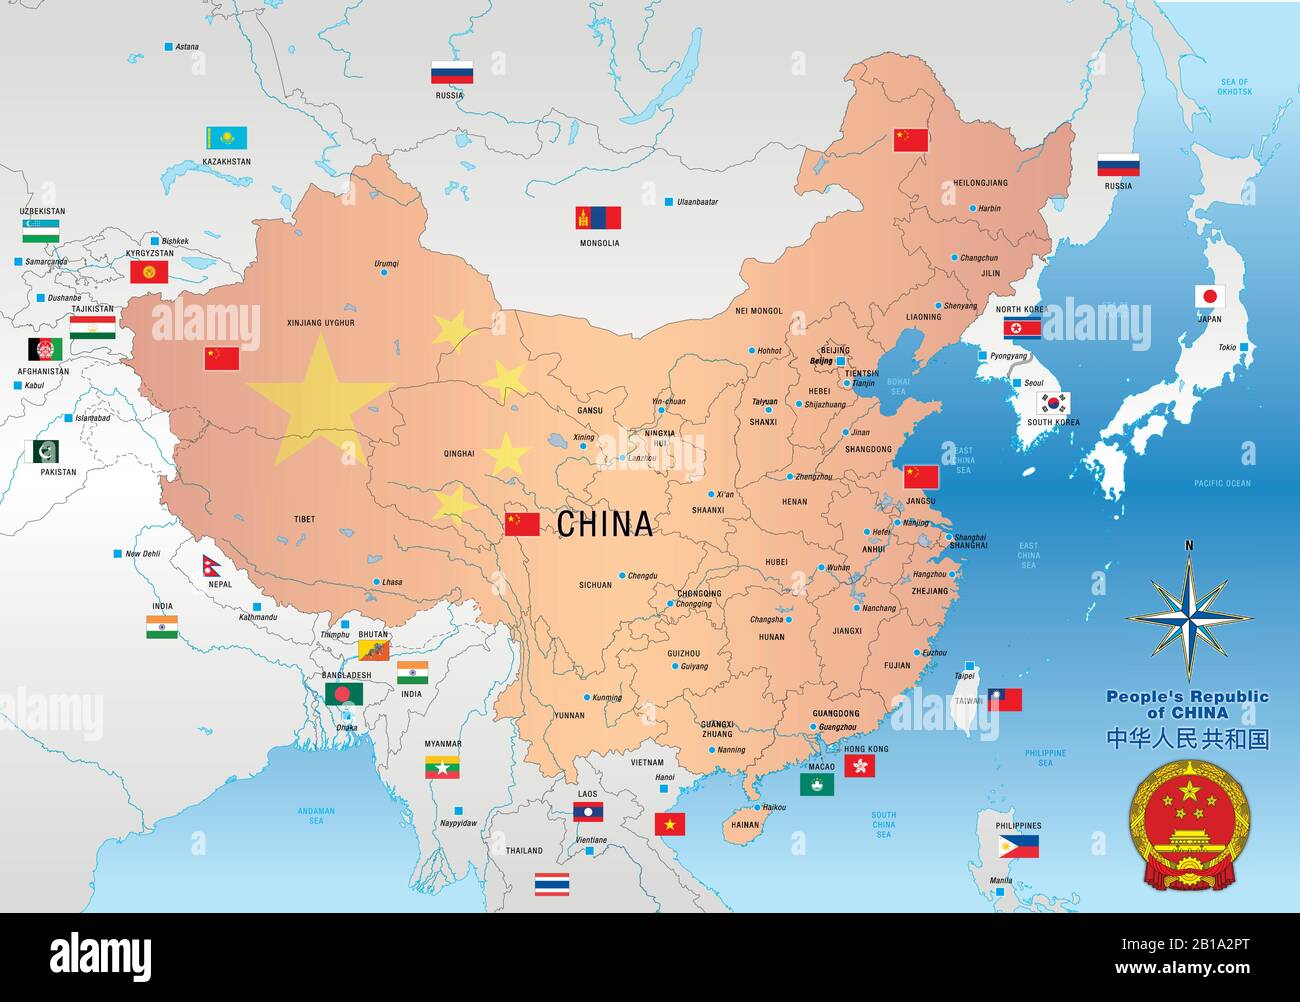 Carte chinoise avec régions, frontières, drapeaux et villes, République  Populaire de Chine, illustration vectorielle Image Vectorielle Stock - Alamy